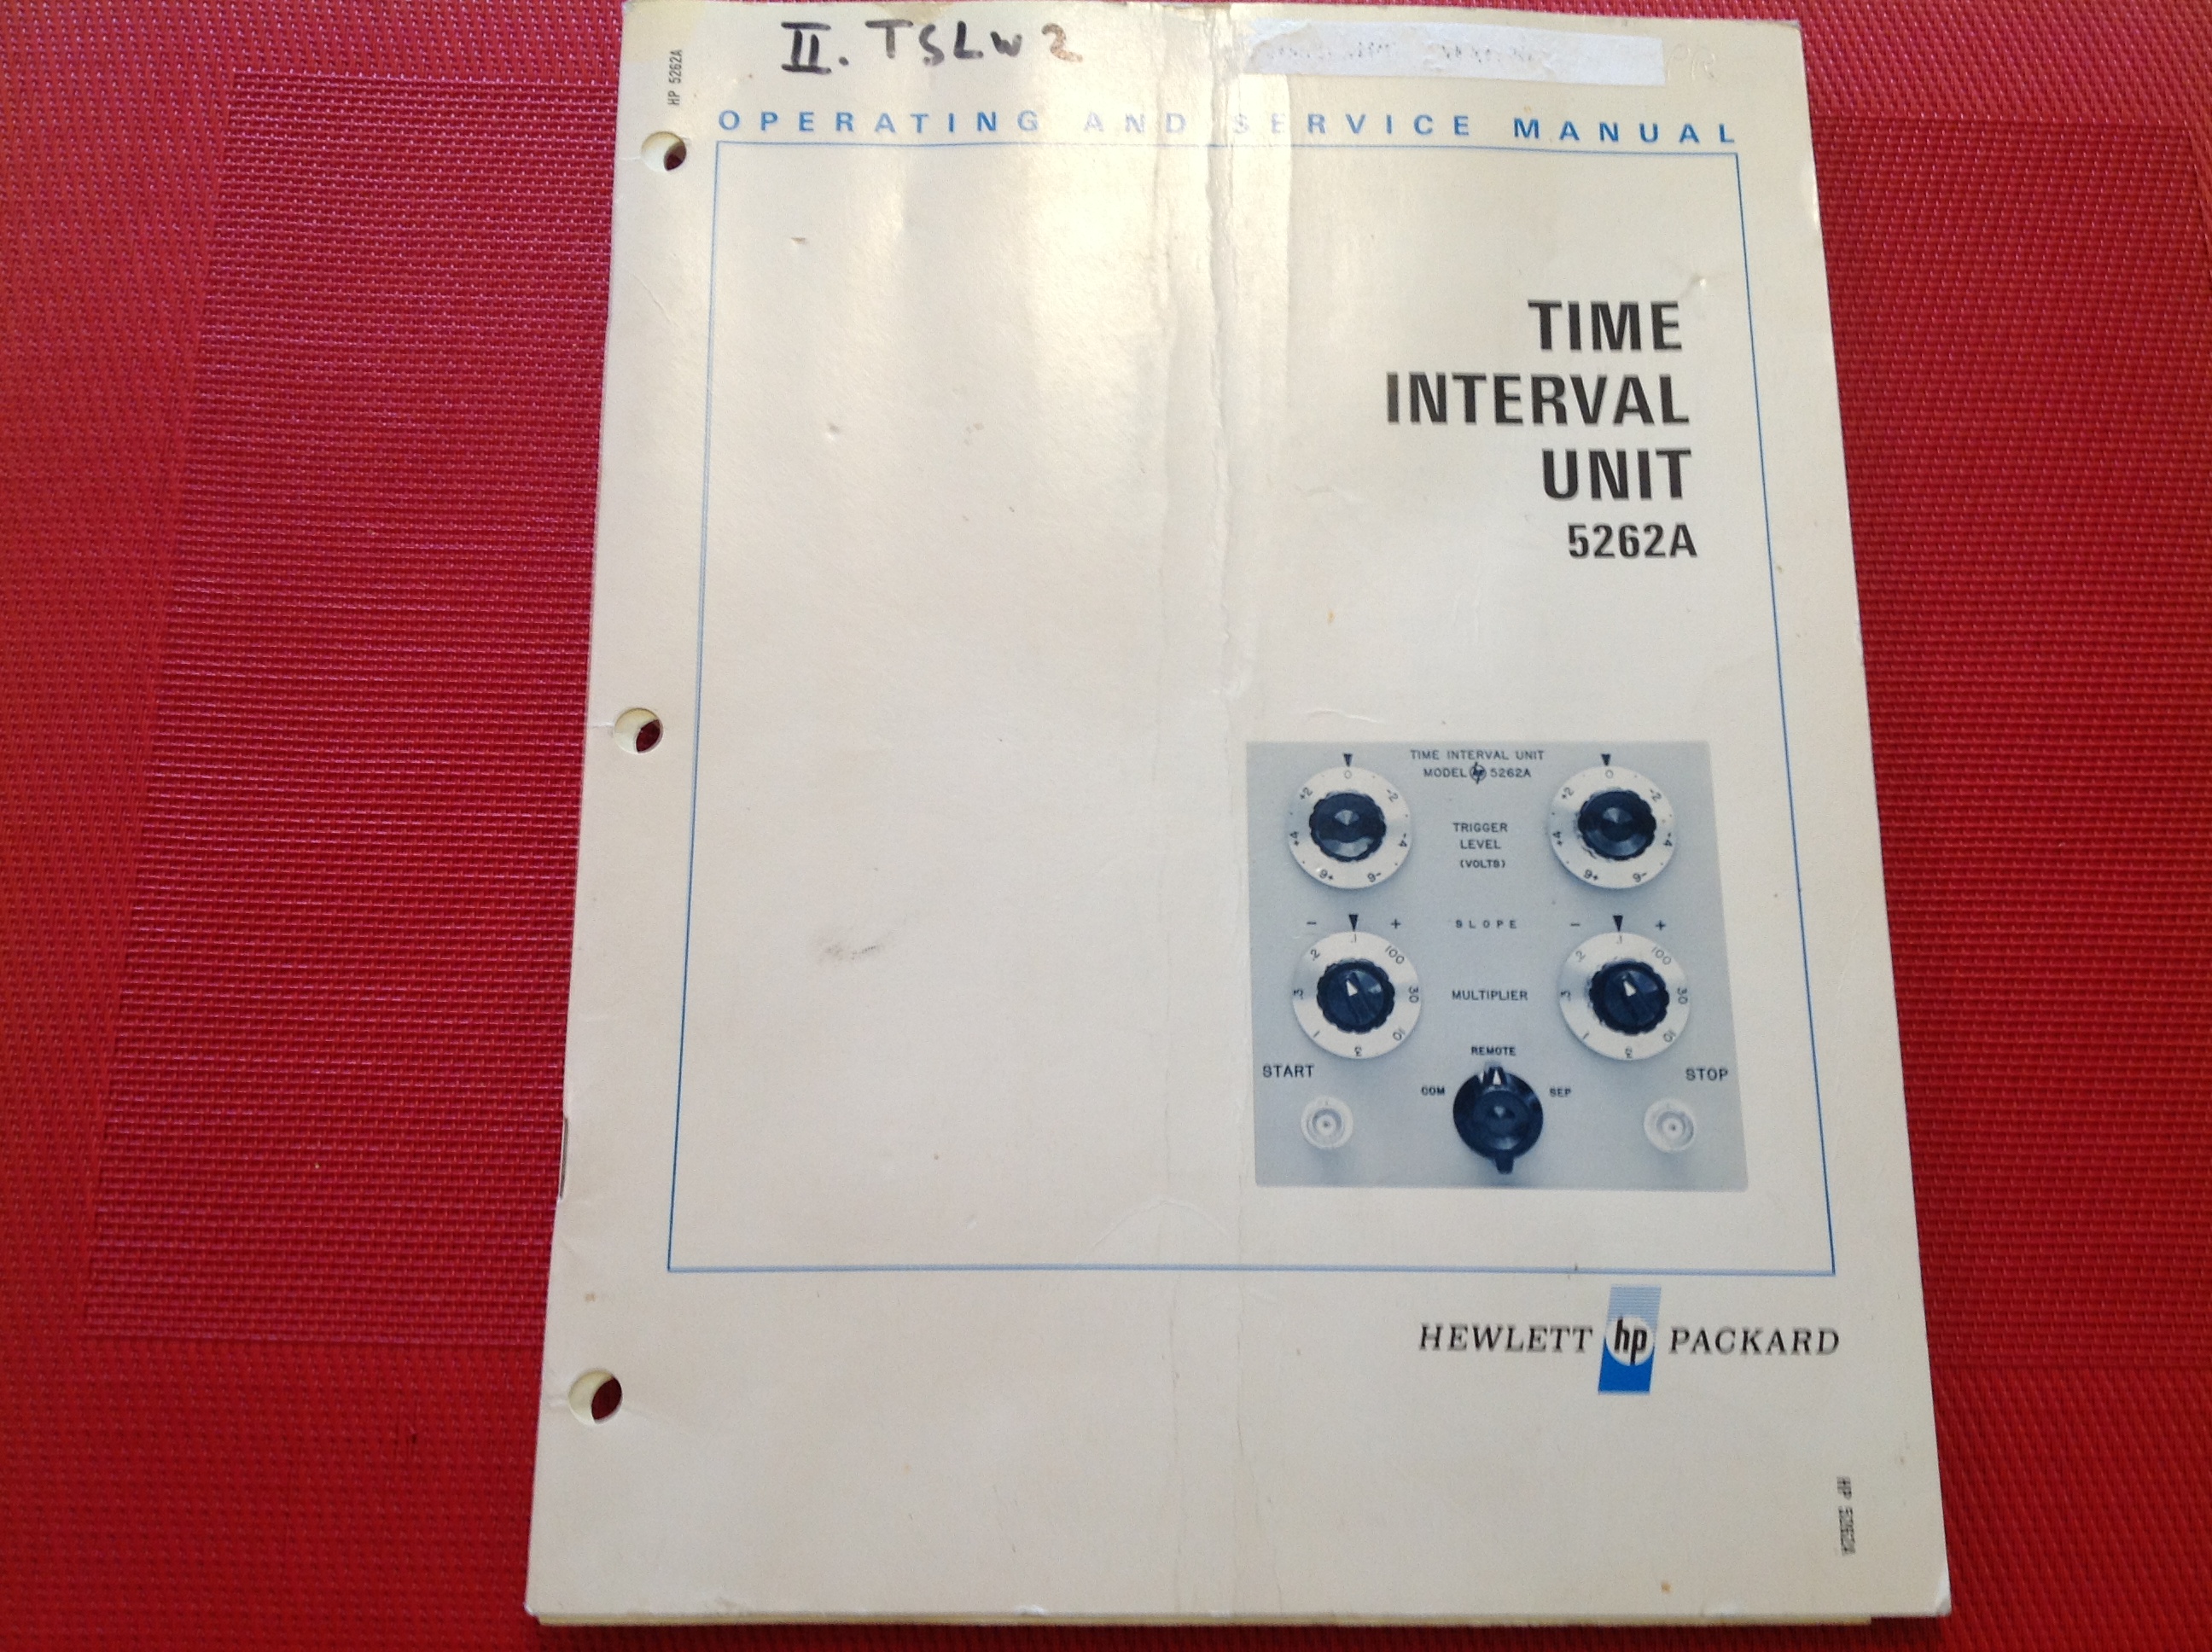 Hewlett Packard Time Interval Unit 5262A